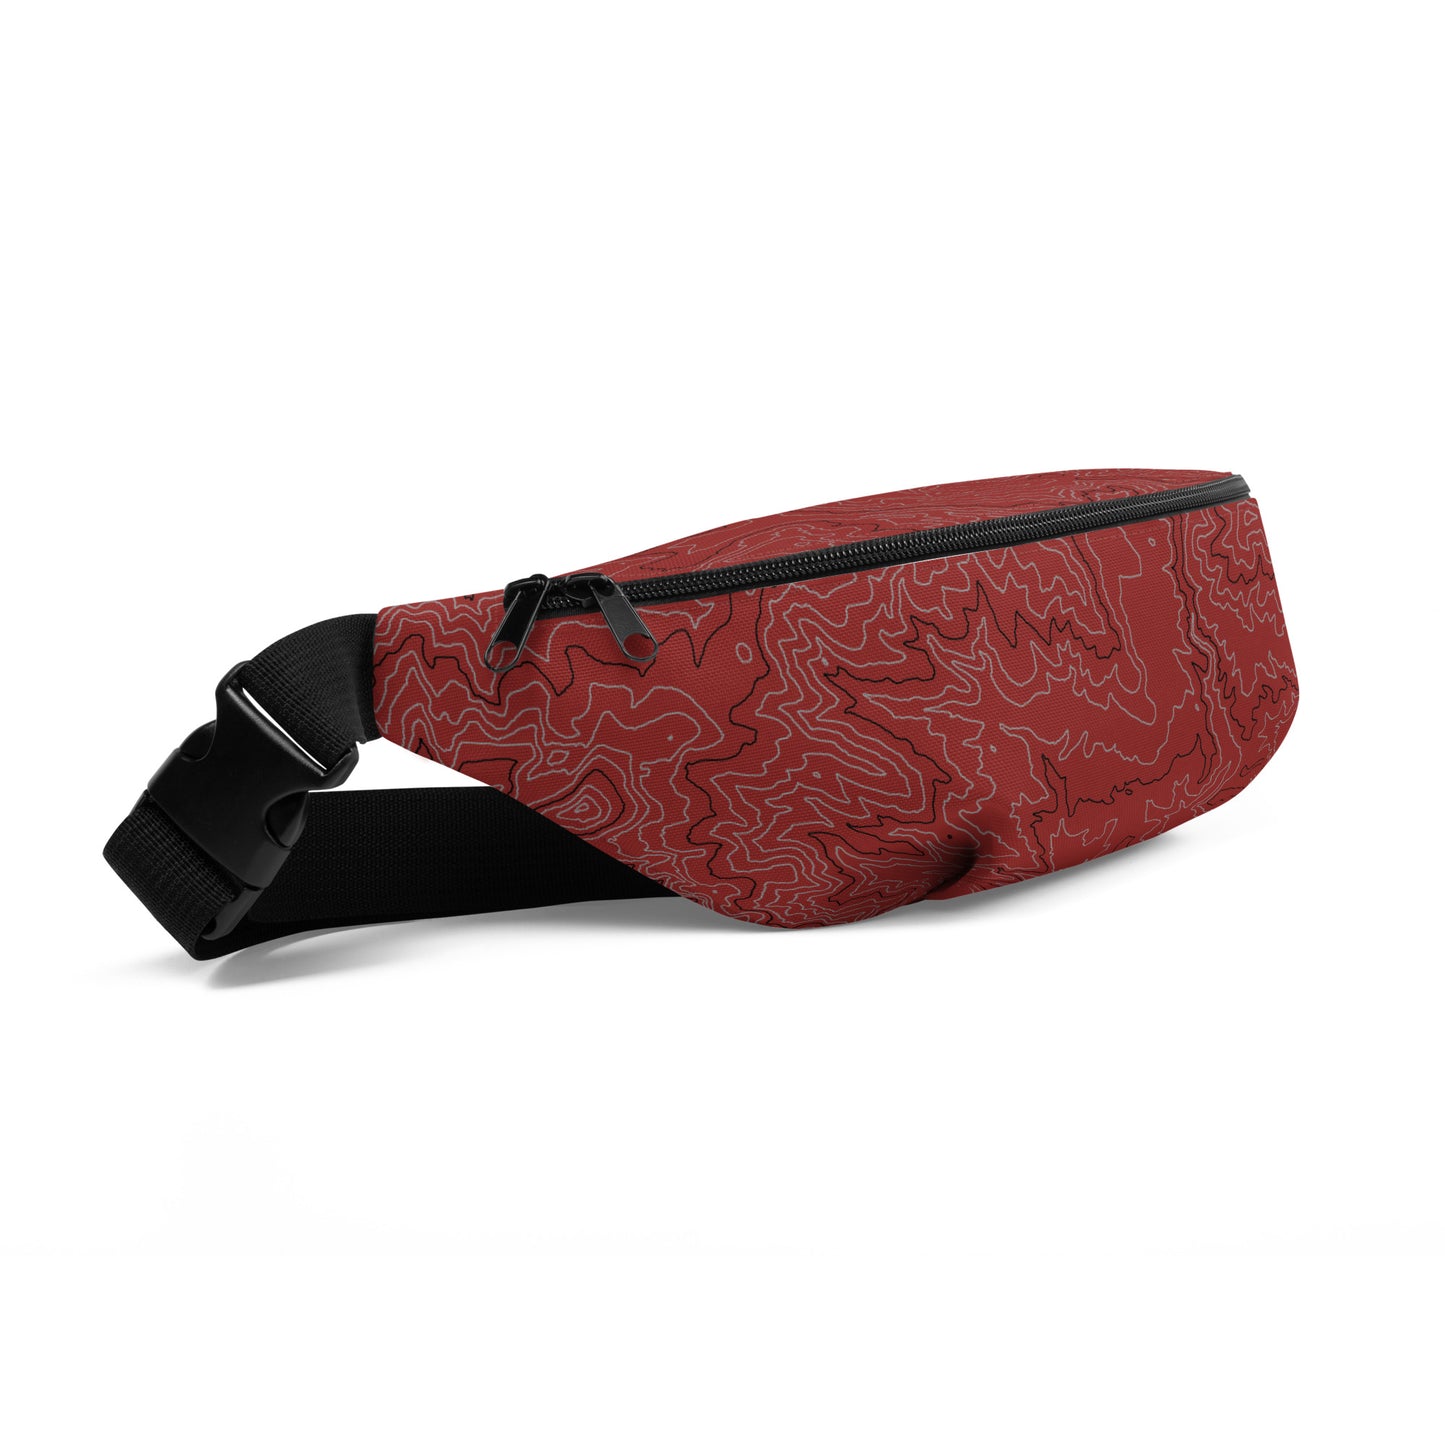 Basics: Crimson Peak - Belt Bag/Fanny Pack